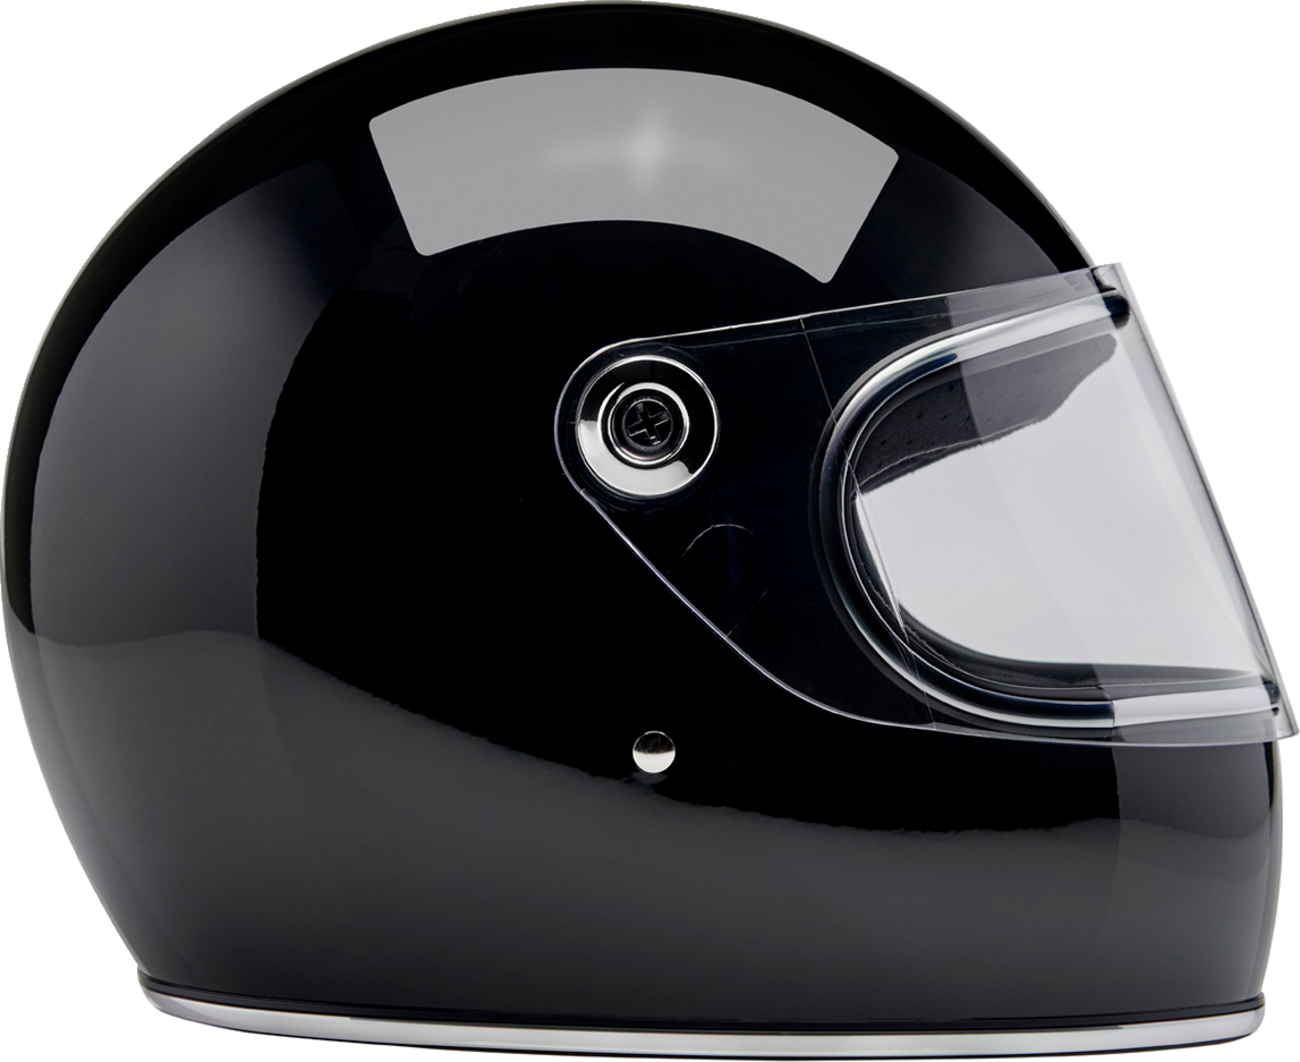 BILTWELL Gringo S Helmet - Gloss Black - XS 1003-101-501